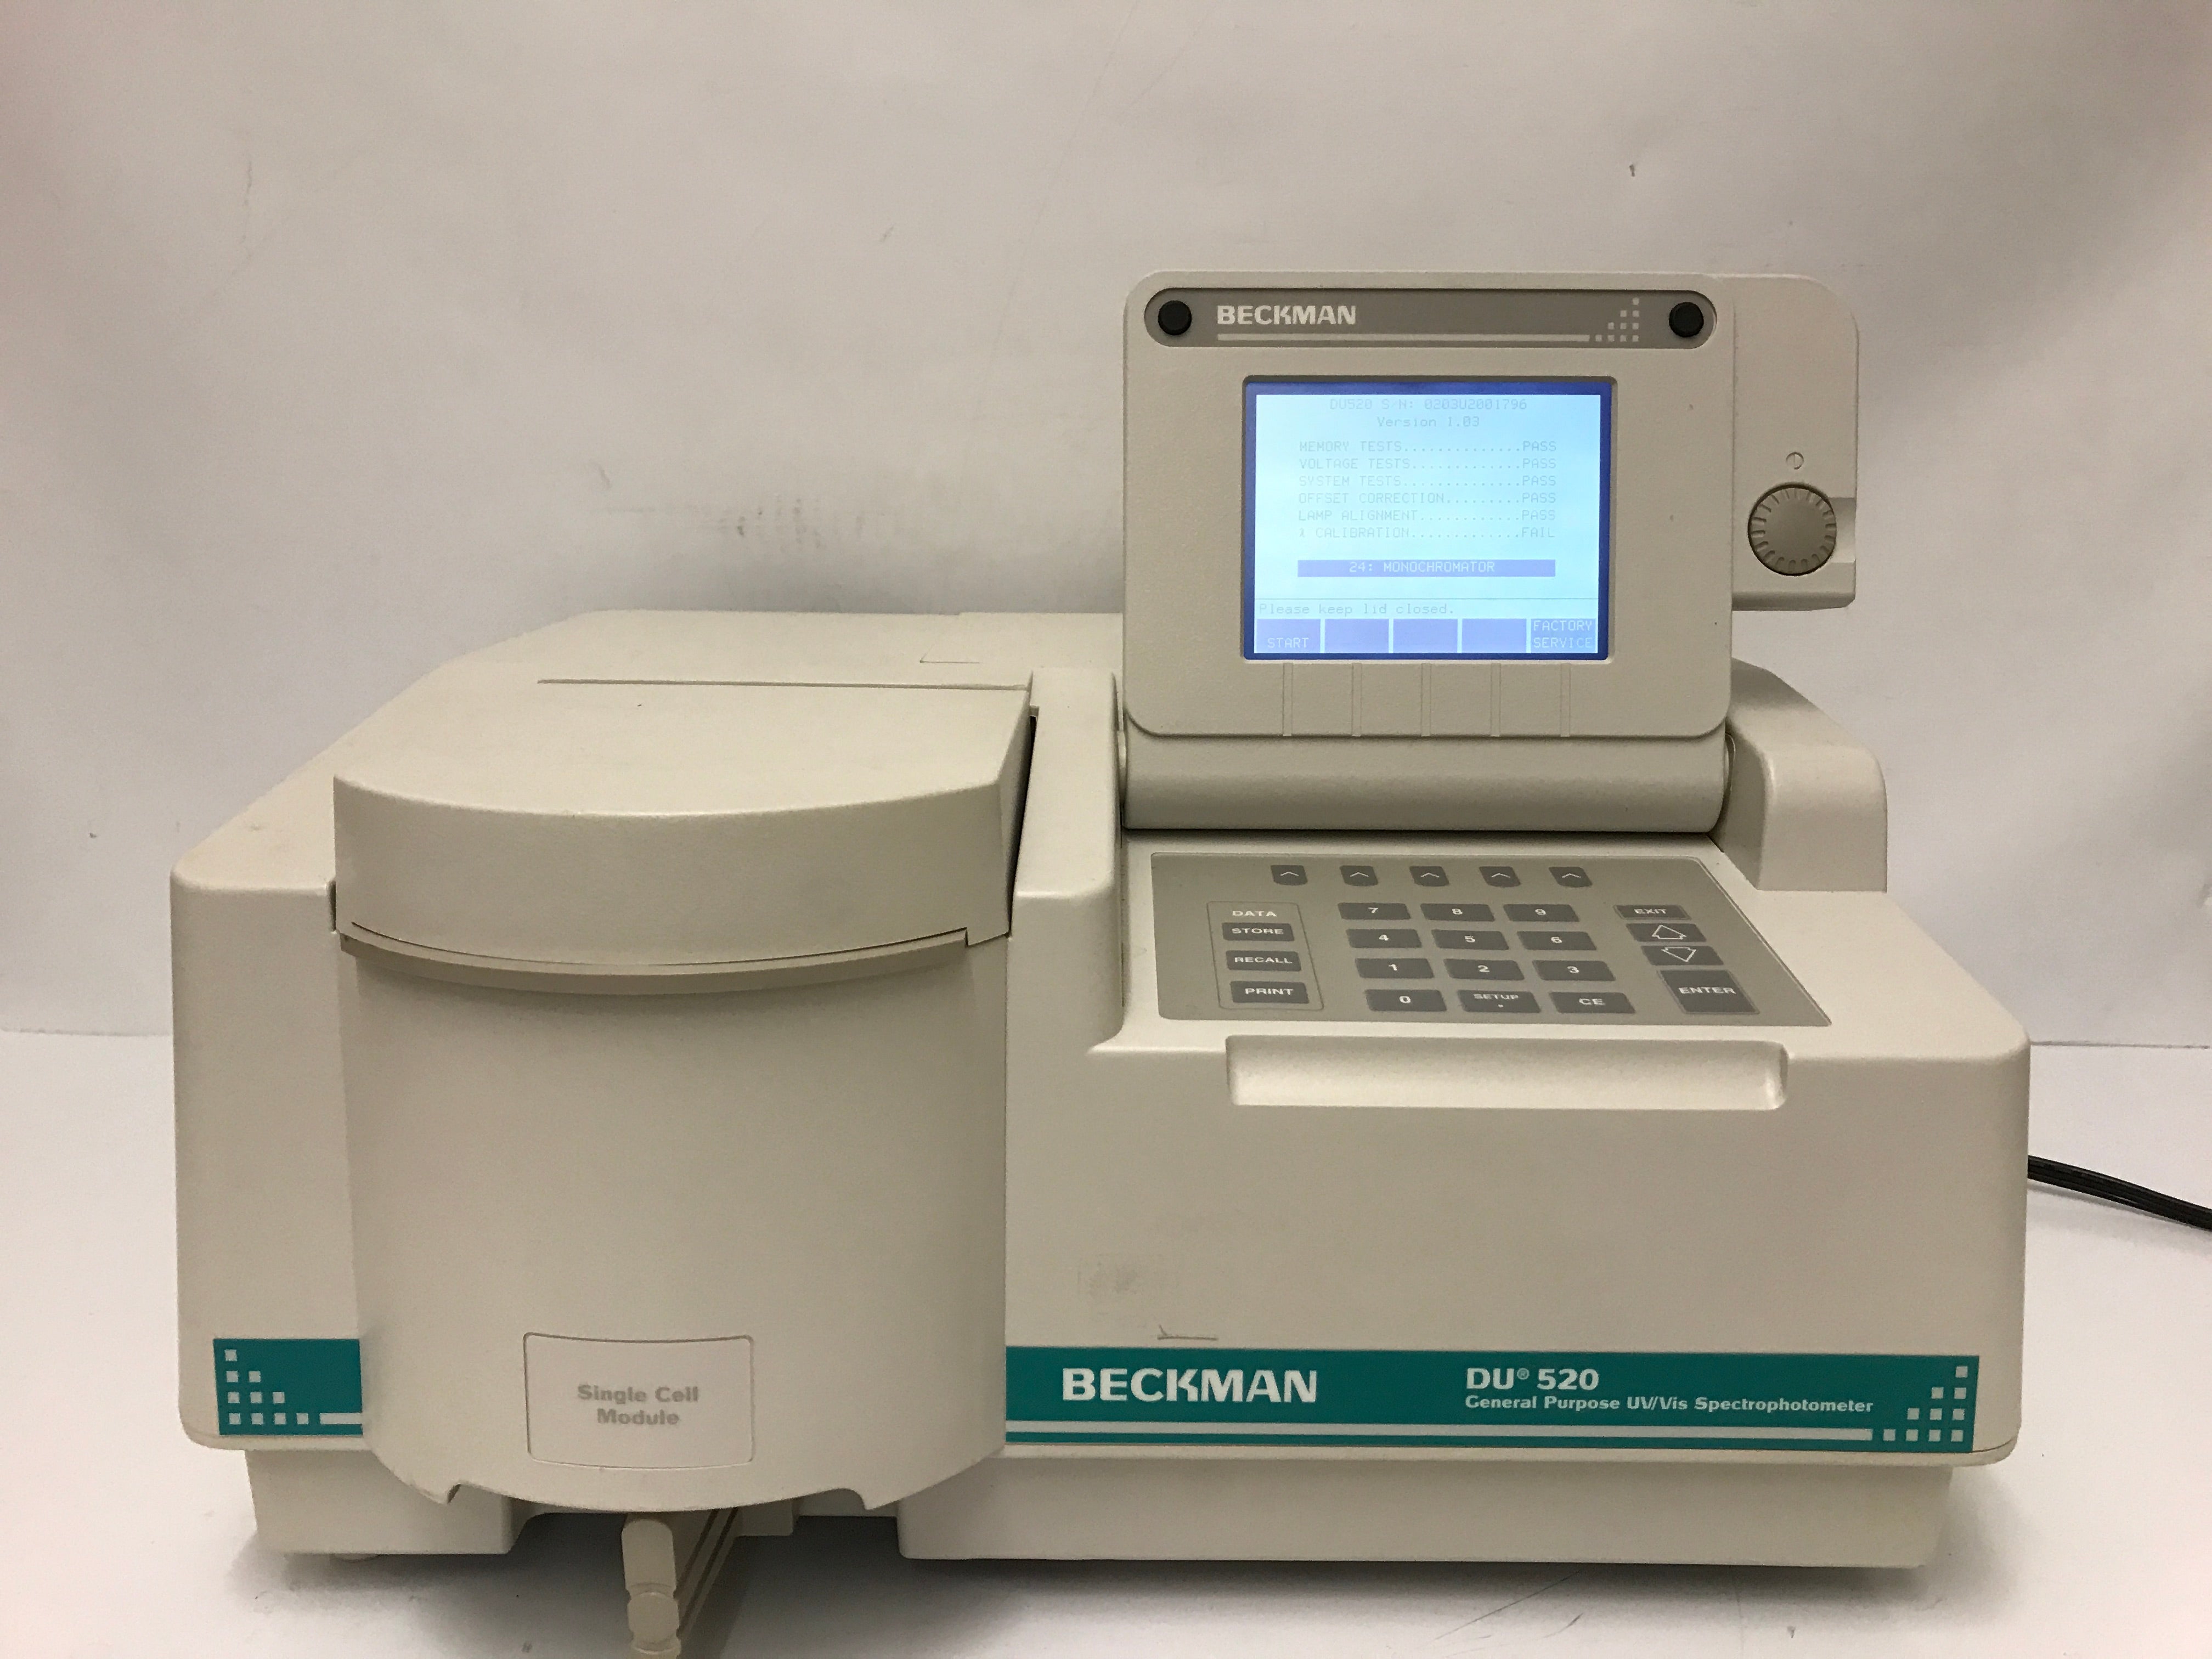 Beckman DU 520 UV/VIS Spectrophotometer